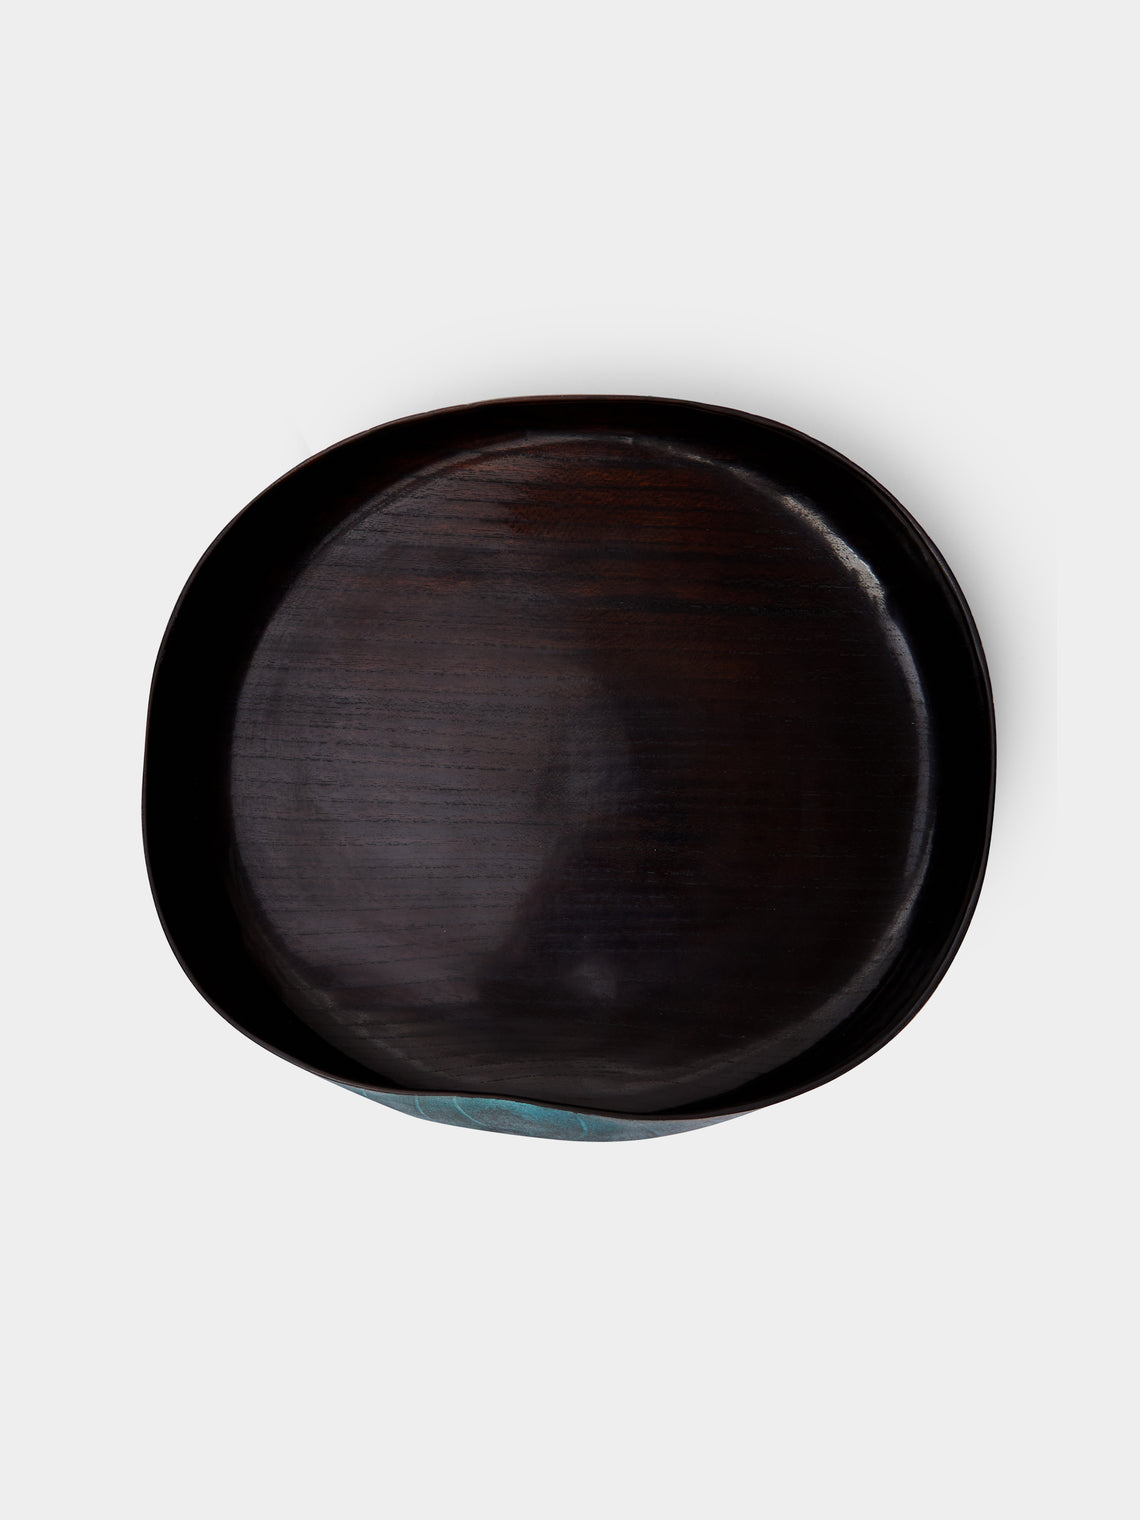 Suk Keun Kang - Hamji Ottchil Wood Medium Bowl -  - ABASK - 